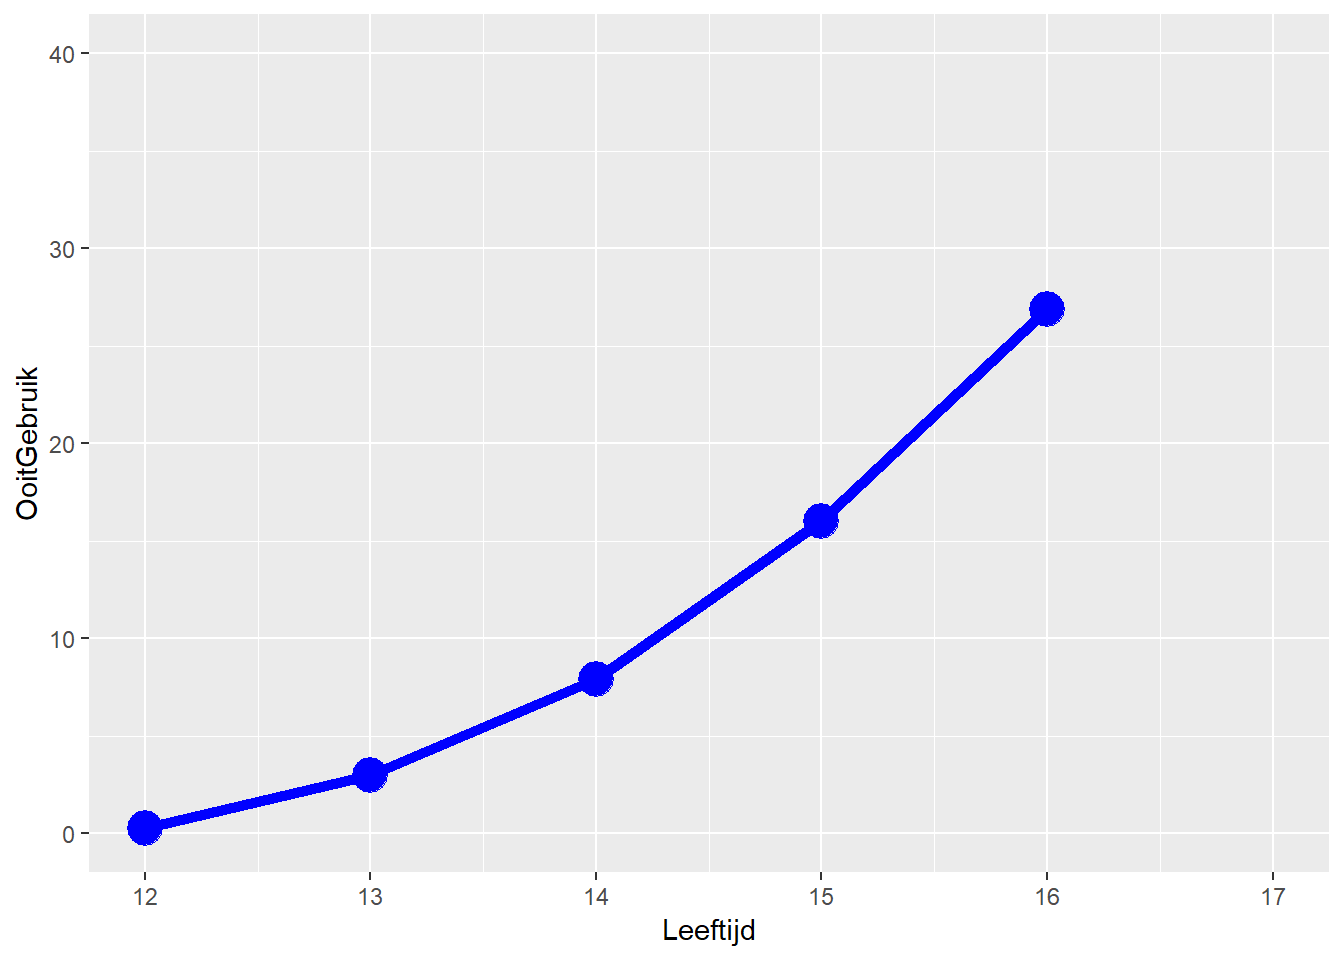 Grafiek van leeftijd en ooit-gebruik van cannabis ^[Zie hierboven voor de R code.]